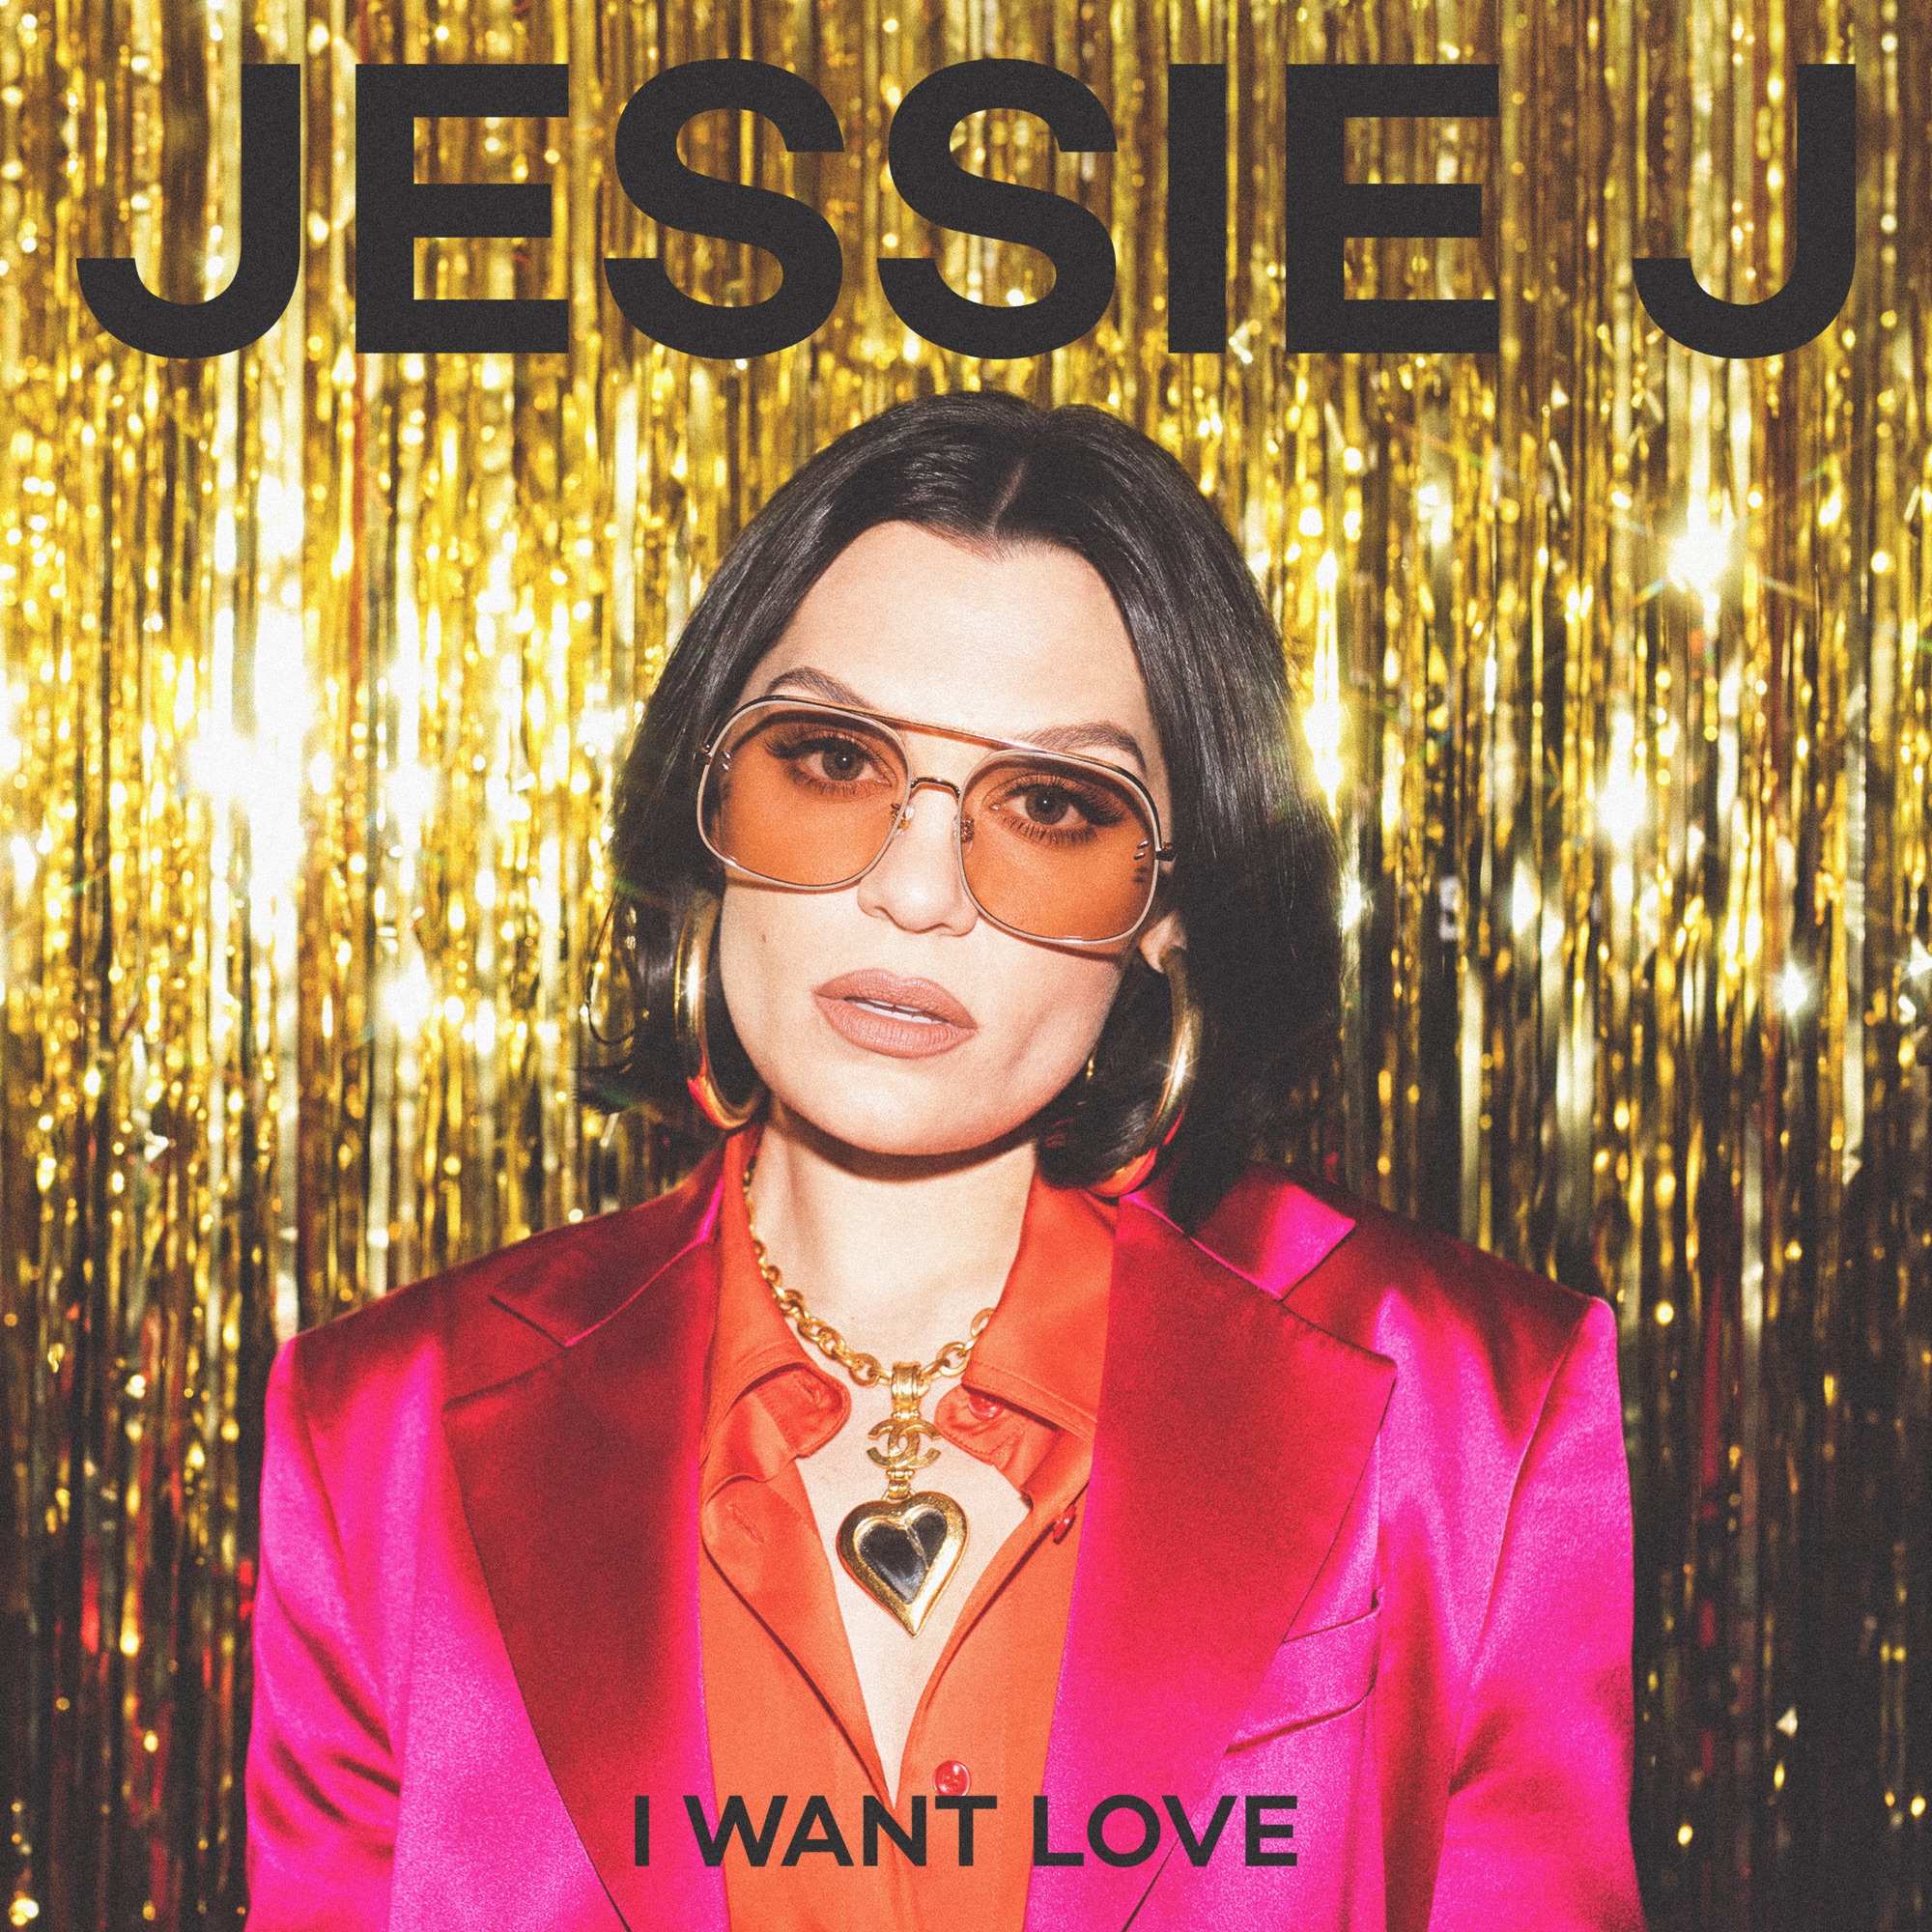 Jessie J - I Want Love - Single